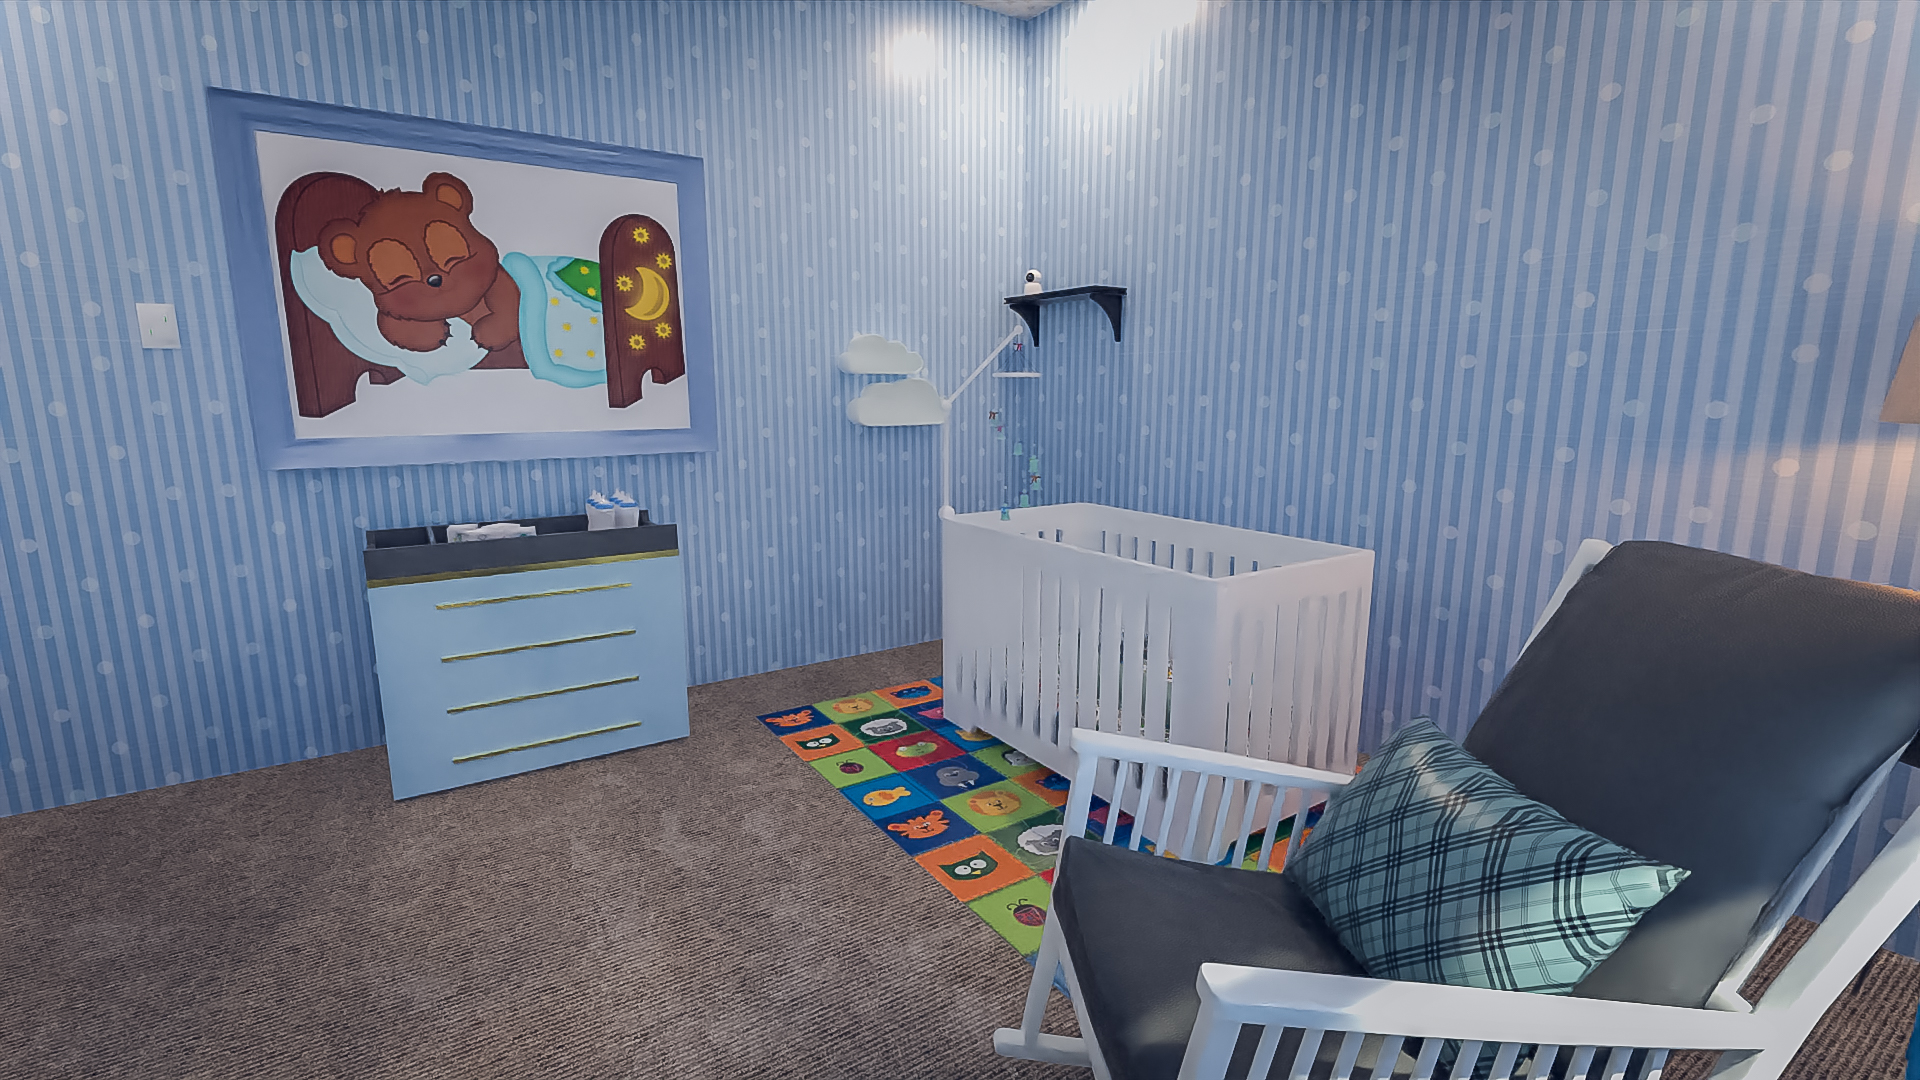 TS Nursery Room by: Tesla3dCorp, 3D Models by Daz 3D